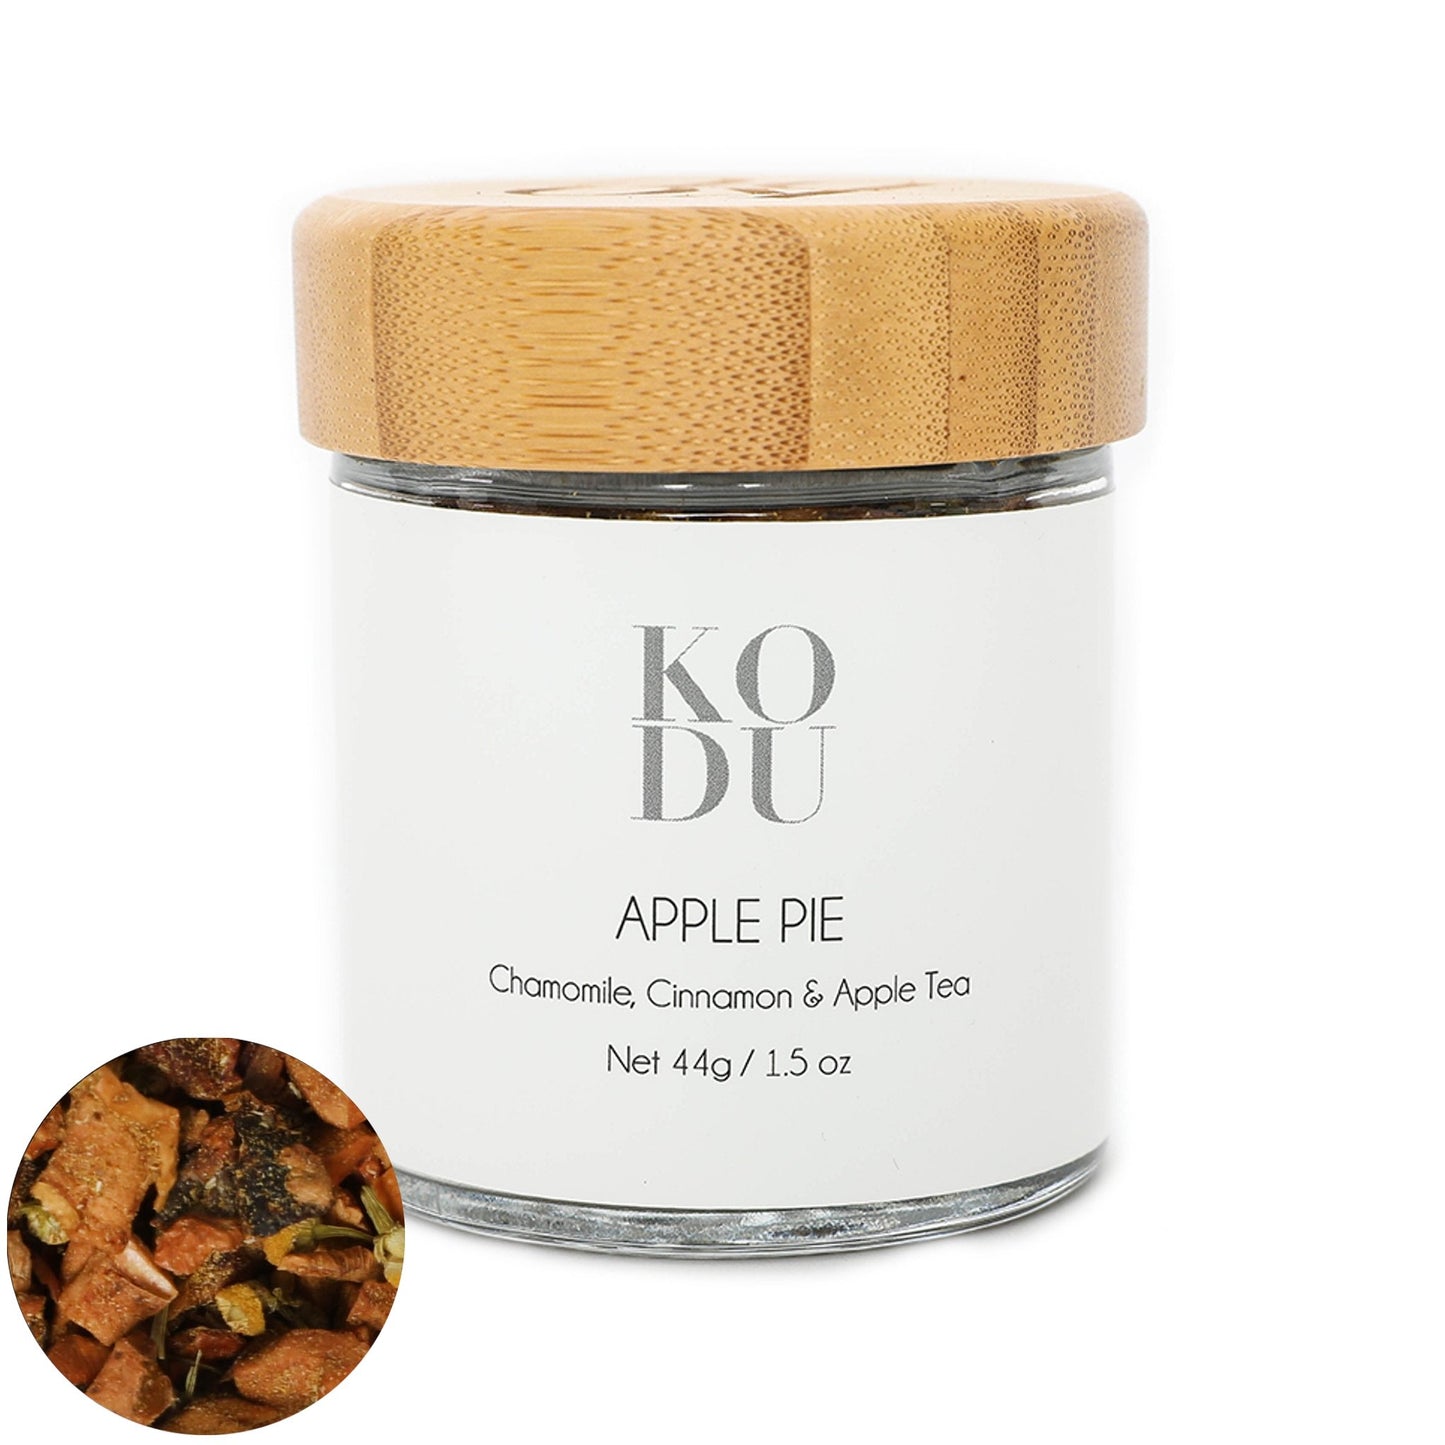 Apple Pie Tea - Loose Leaf Tea Infusion - Chamomile & Apple - mykodu